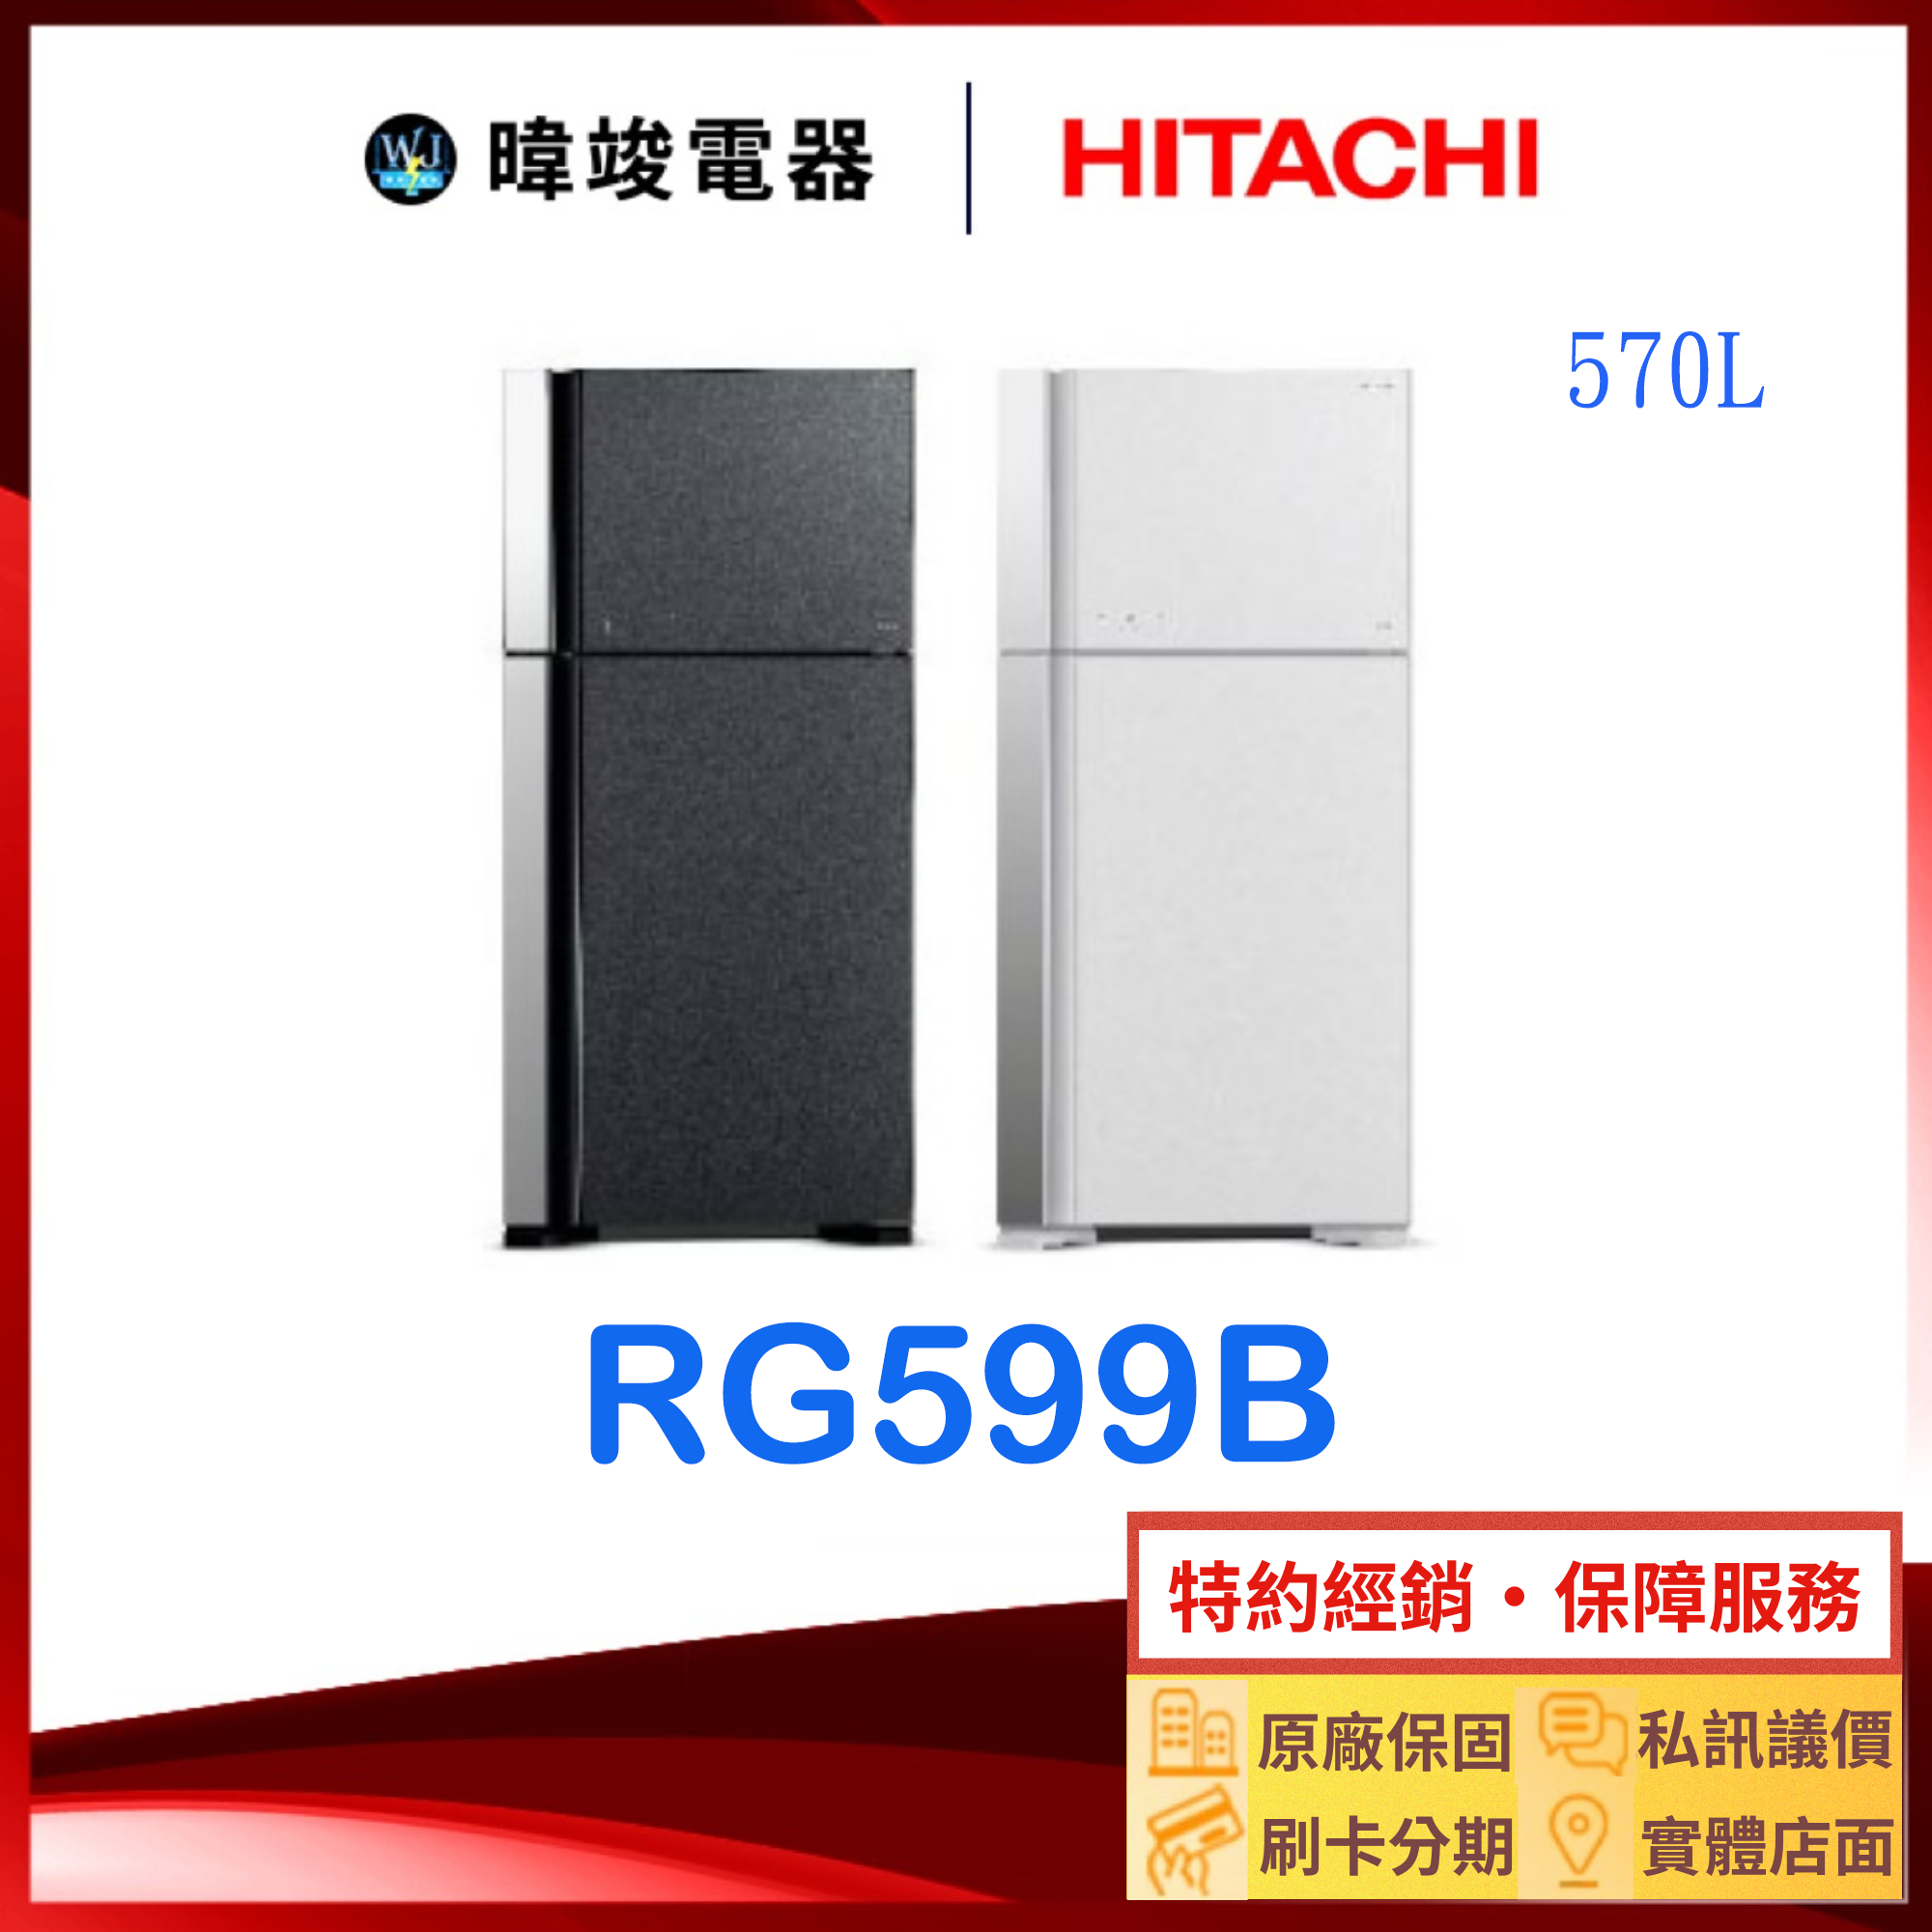 有現貨【獨家折扣碼】HITACHI 日立 RG599B 雙門冰箱 1級能效 R-G599B 取代RG599